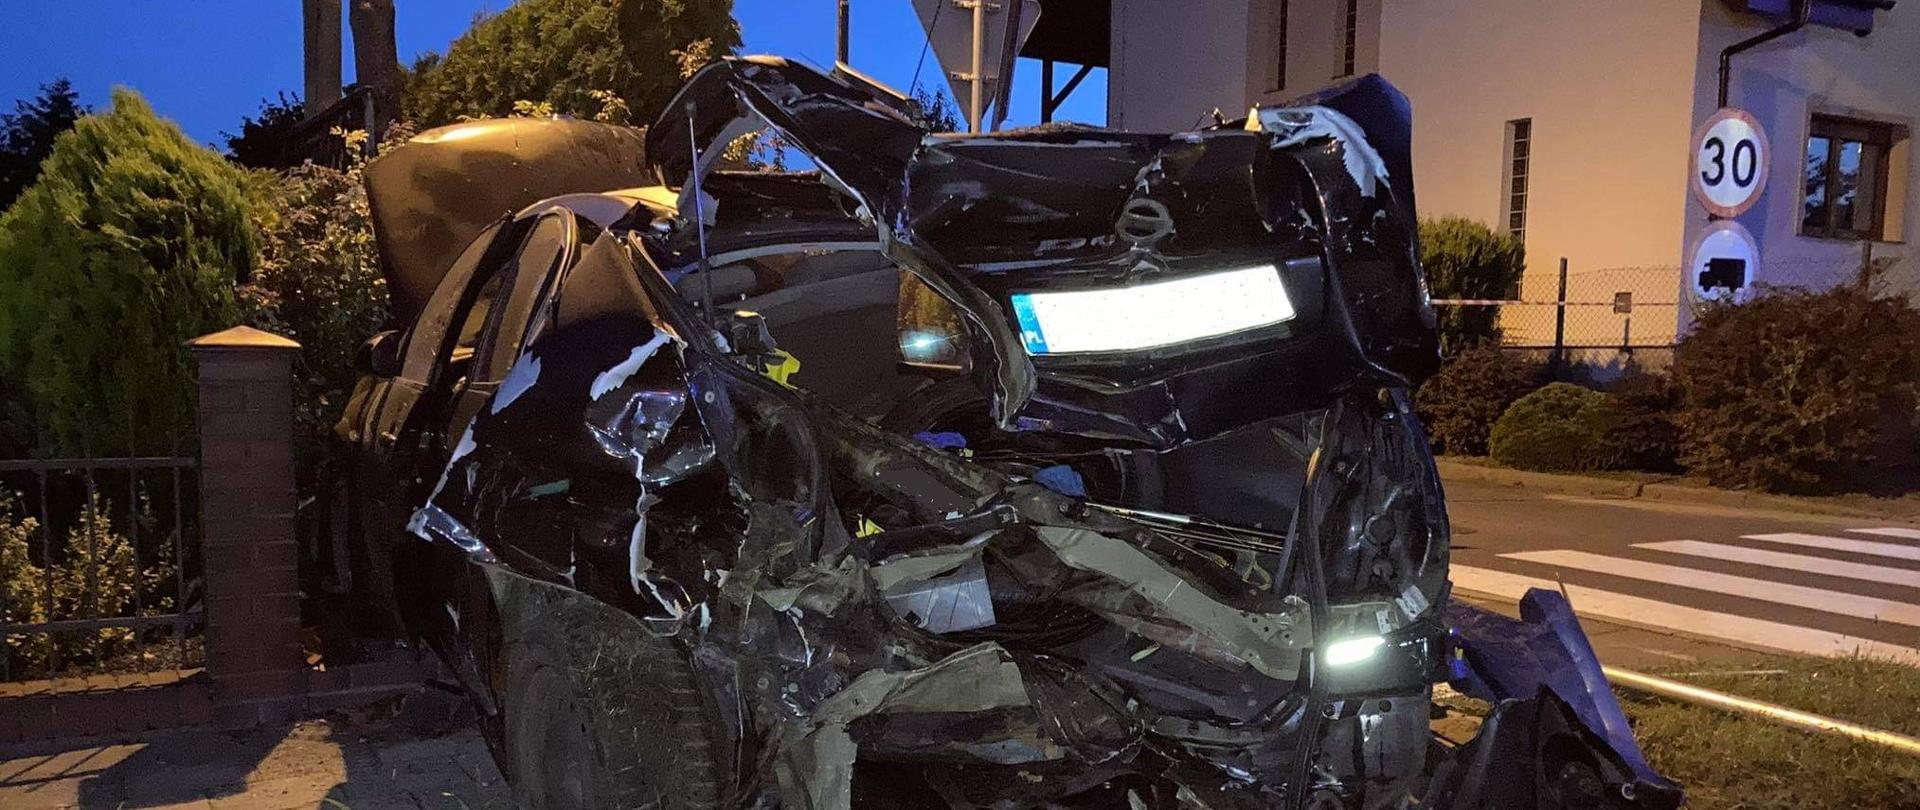 Zdjęcie przedstawia rozbity pojazd marki Nissan Primera koloru ciemnego. Pojazd z rozbitym tyłem stoi na pasie zieleni prostopadle do jezdni, a przód pojazdu znajduje się na posesji prywatnej. Pojazd wjeżdżając na posesję uszkodził ogrodzenie.